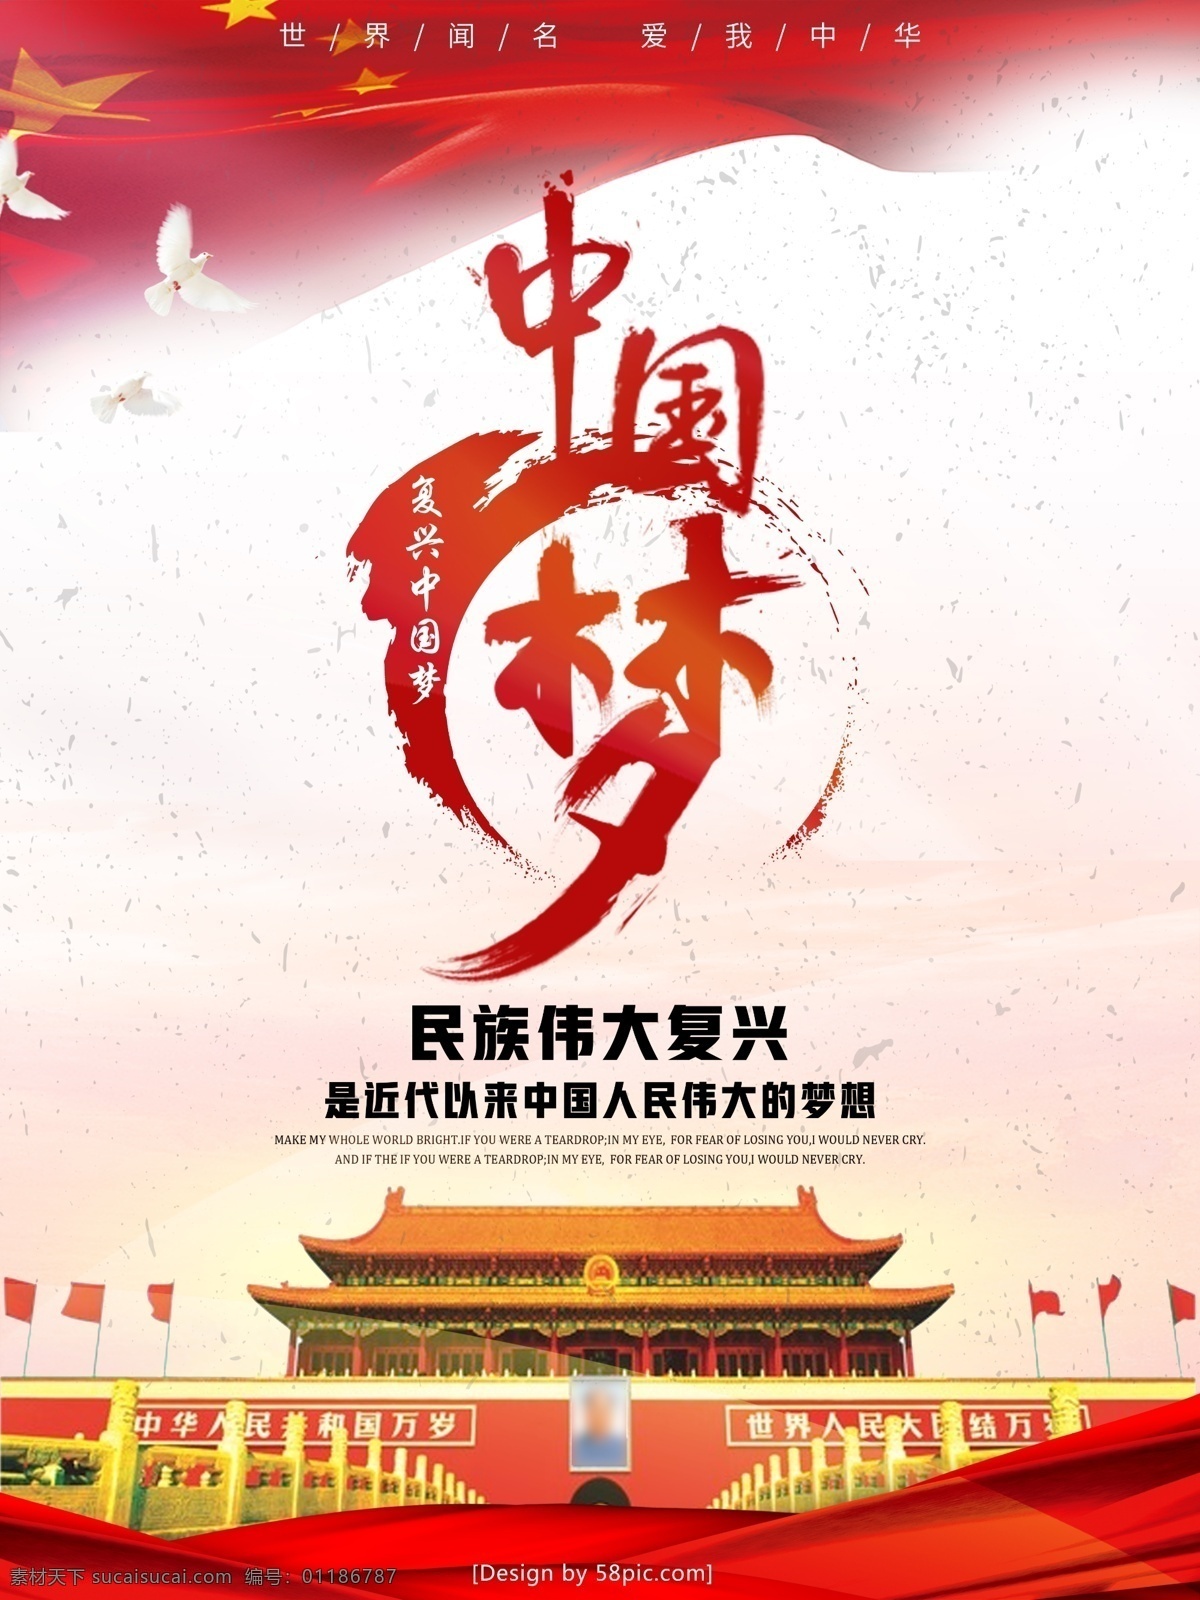 中国 风 创意 梦 民族 复兴 宣传海报 中国梦 民族复兴 复兴梦 价值观 凝聚力 伟大梦想 国旗 字体 psd素材